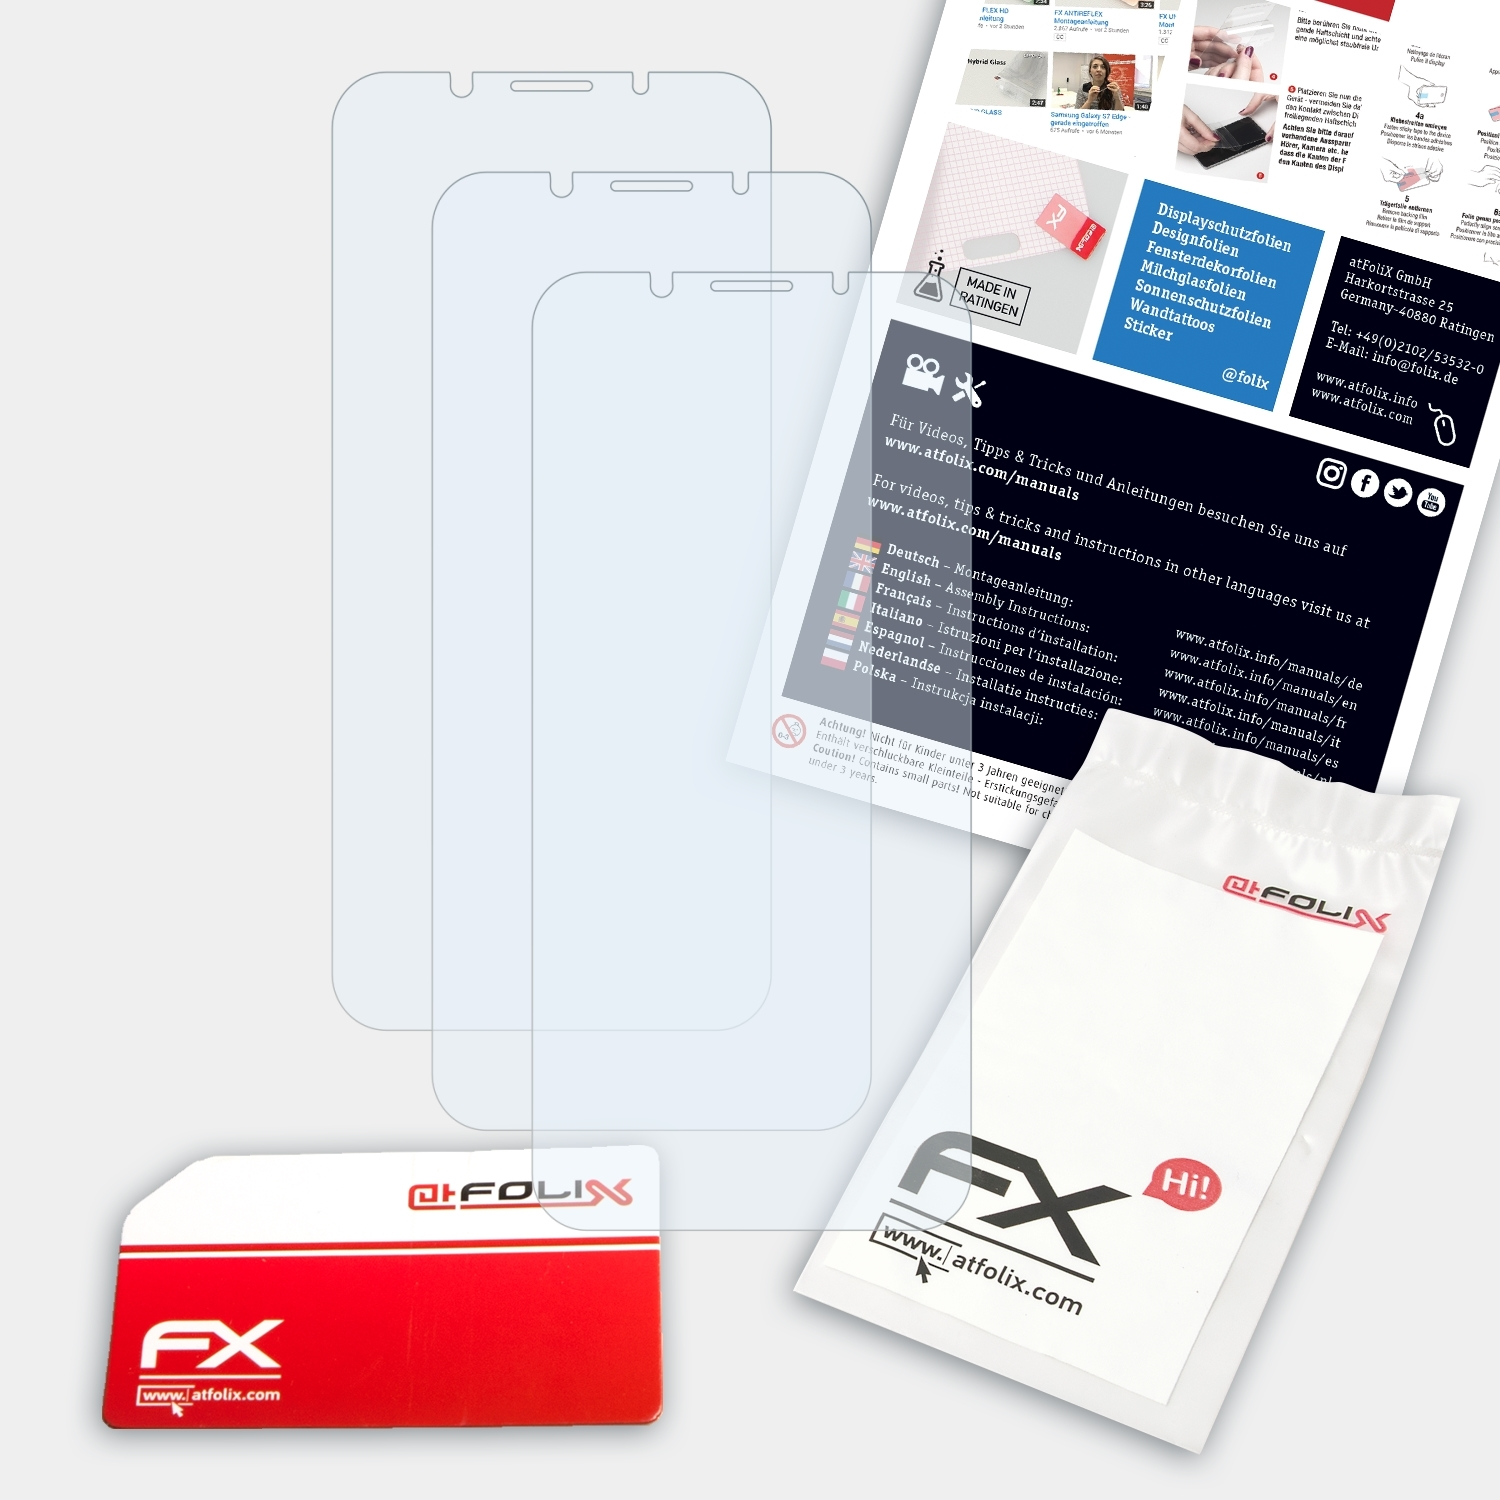 Oppo FX-Clear ATFOLIX 3x F5) Displayschutz(für